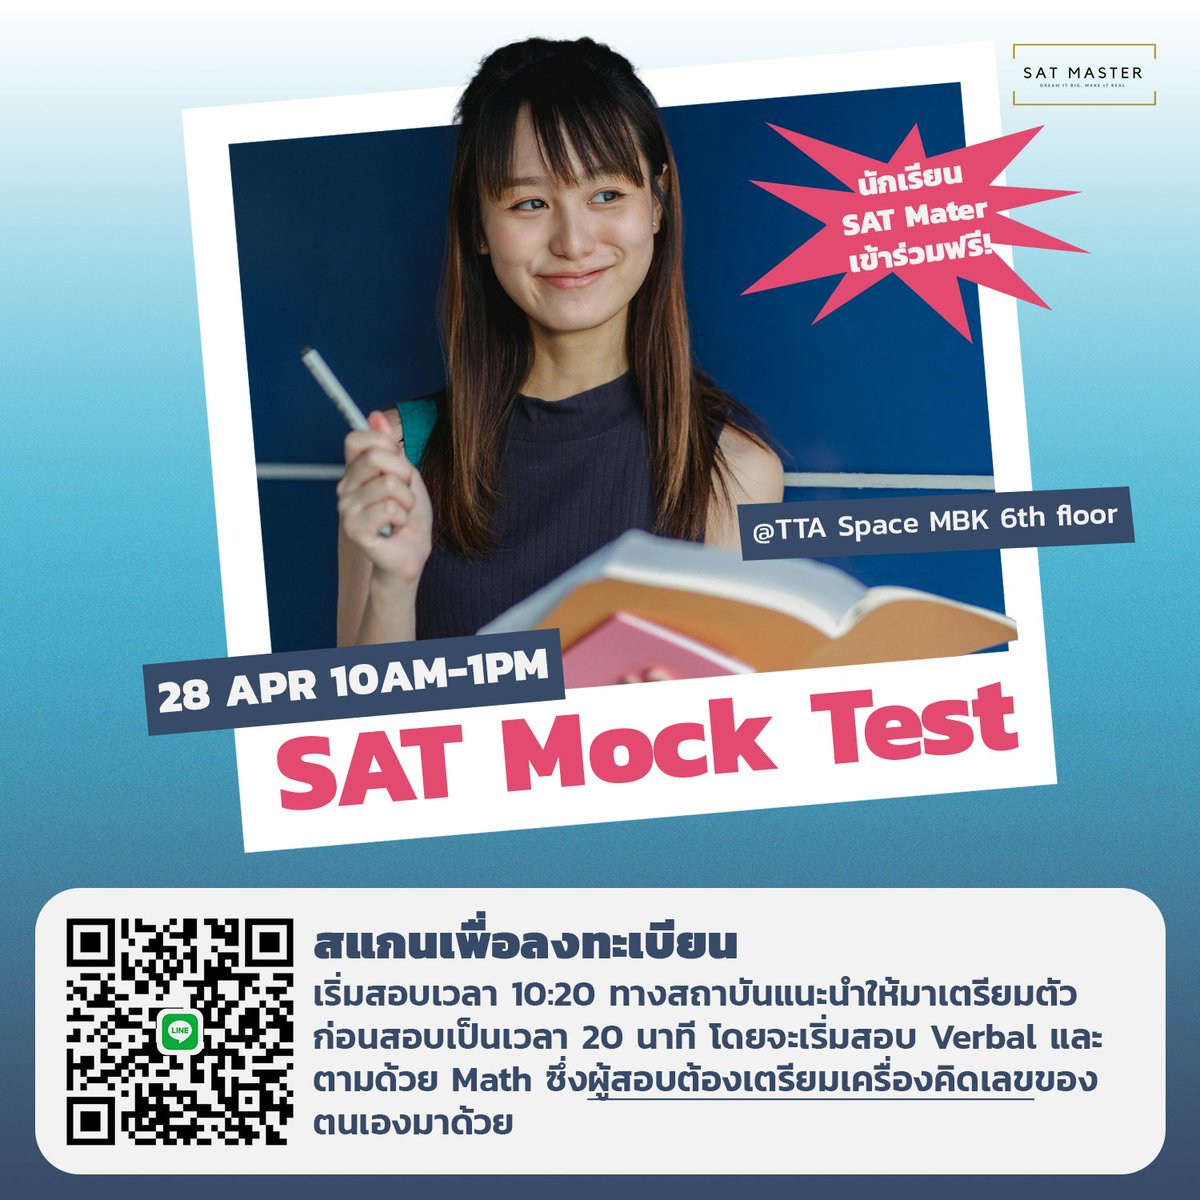 ซ้อมก่อนสอบจริงล่วงหน้า ดูคะแนนแล้วมาทำให้ดีขึ้นในโค้งสุดท้ายก่อนสอบกัน!!!
น้องๆที่มีสิทธิ์สอบฟรี ลงทะเบียนได้เลยน๊า
📷นักเรียน SAT Camp SS>2
📷นักเรียน SAT BIG DEAL รอบ Apr28-May3
.
Line@ : @SatMaster
#satmasterinstitute #satmaster #SAT #DigitalSAT
#satverbal #satmath